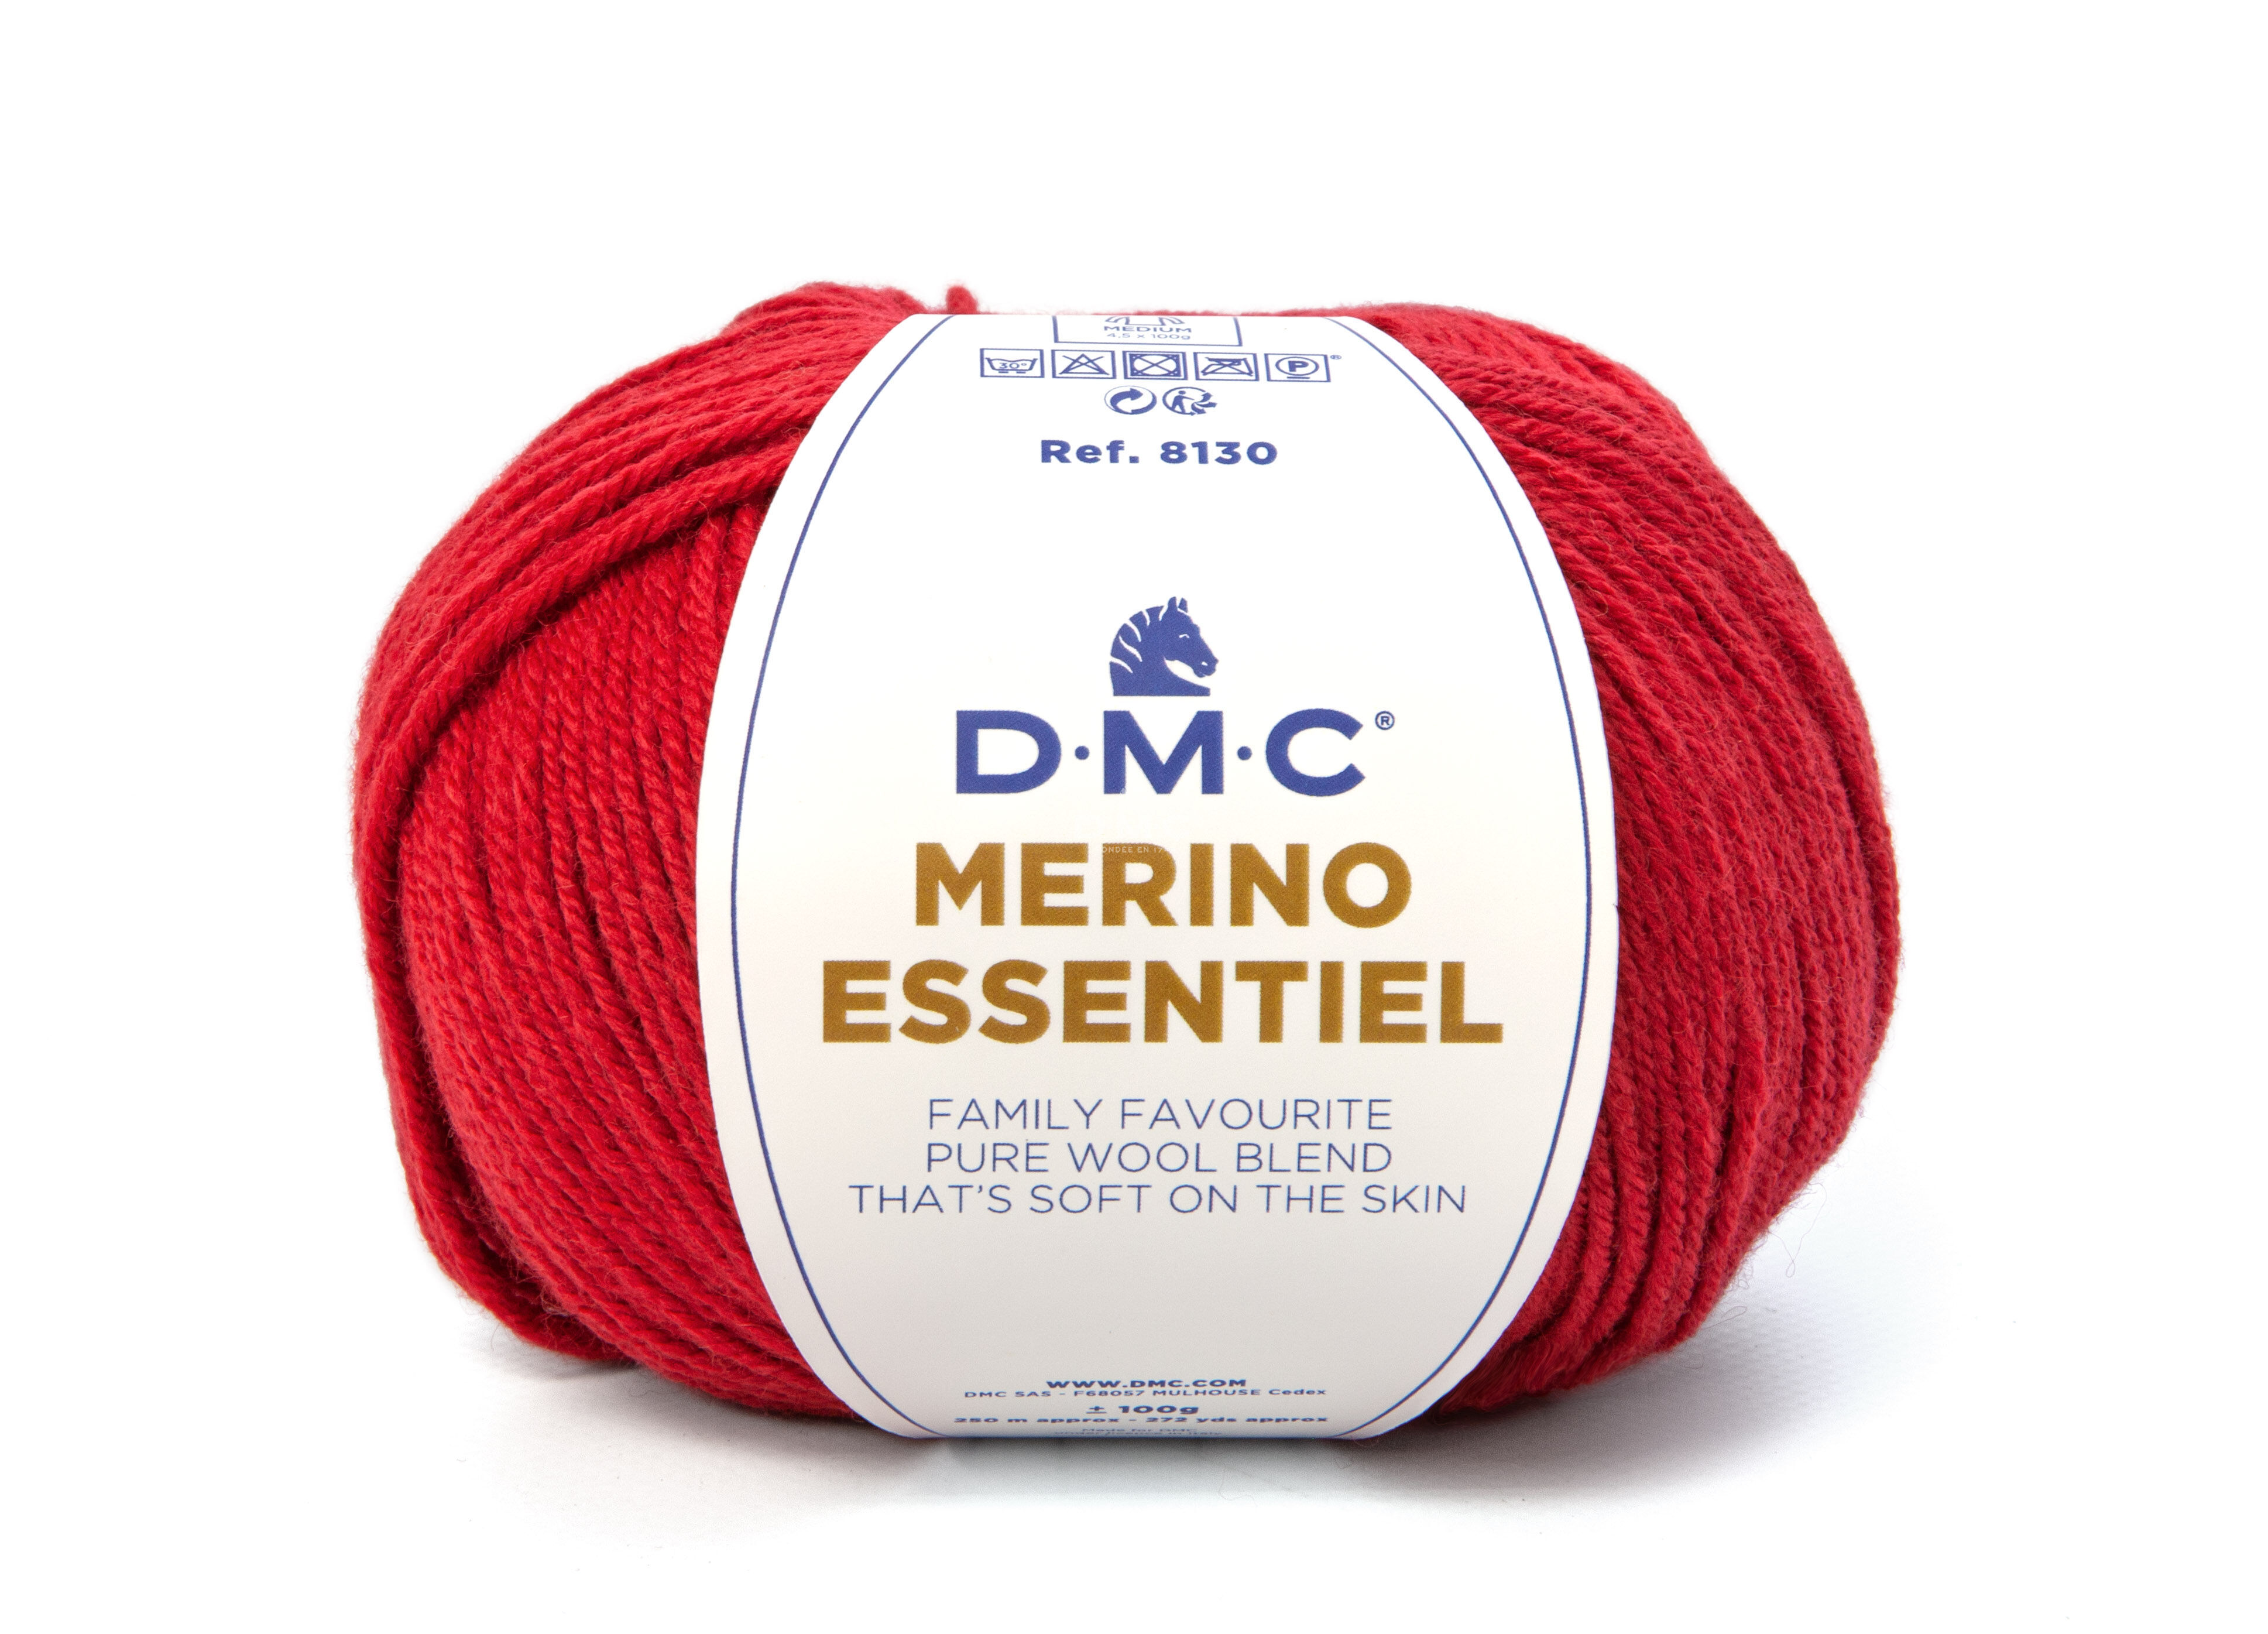 DMC Merino Essential 4 - 871 meggypiros